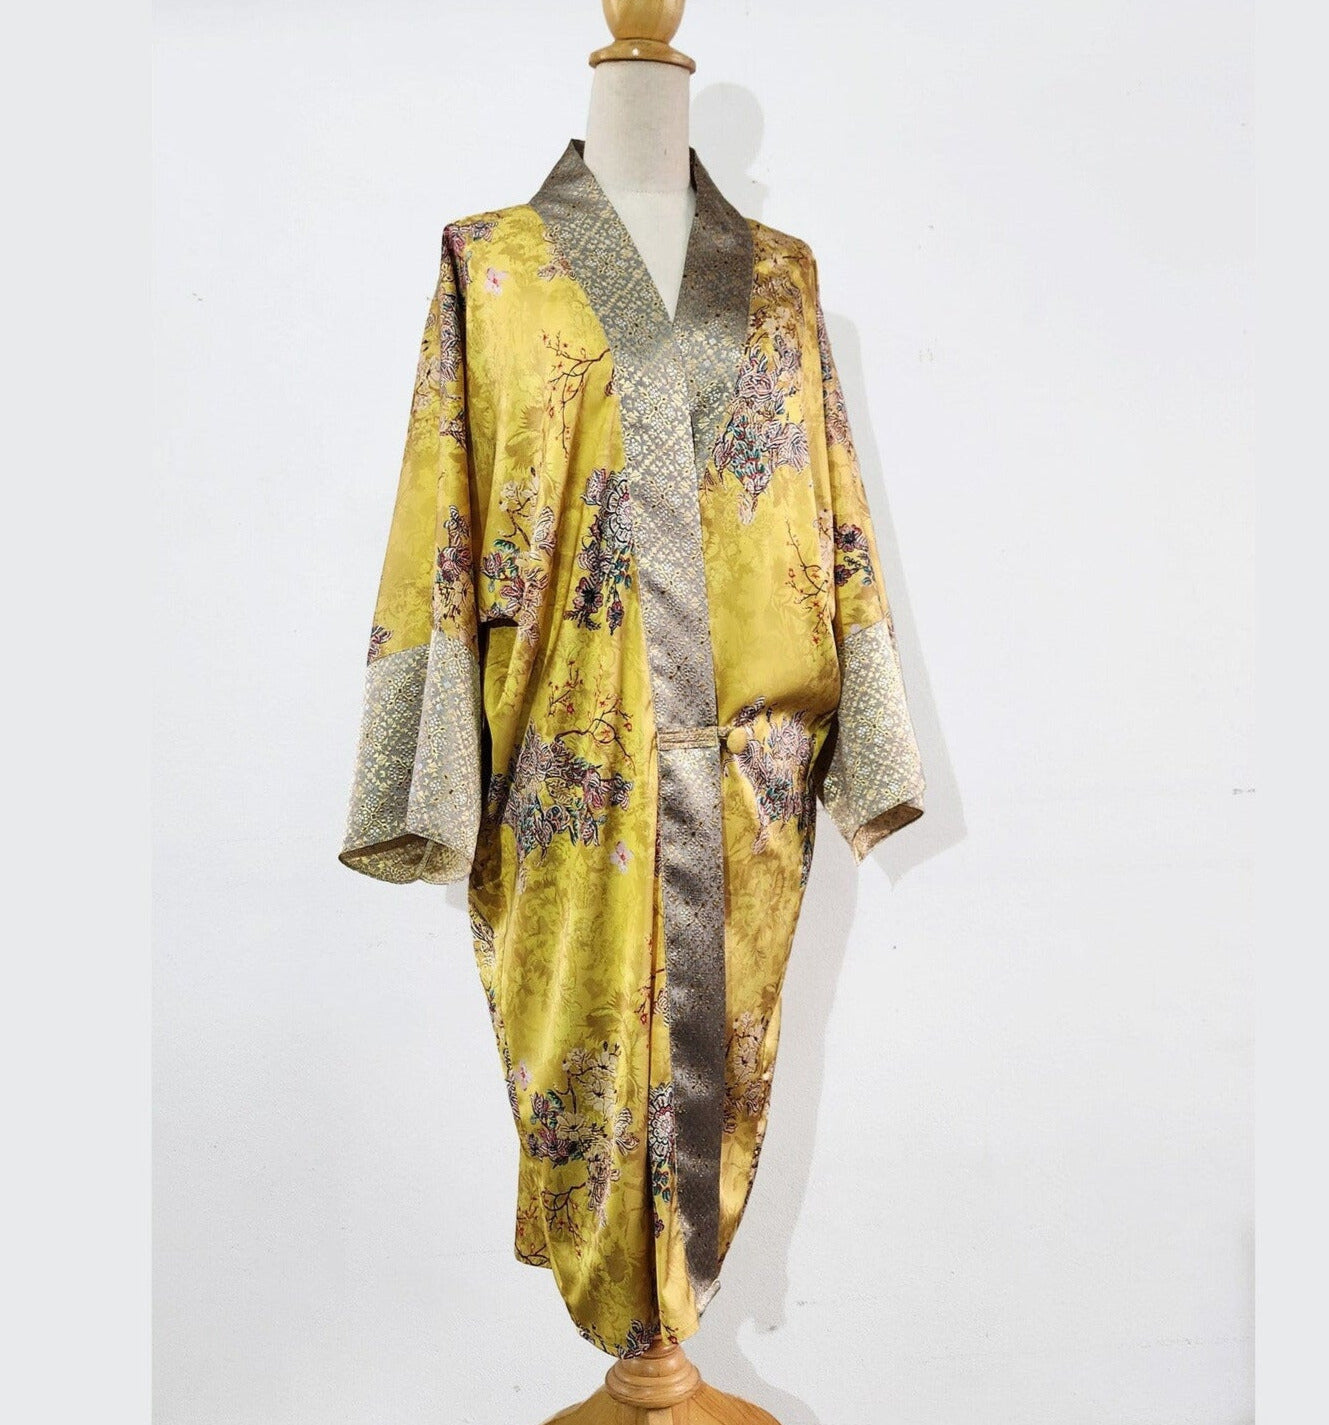 1920s loungewear inspired kimono robe in printed yellow satin